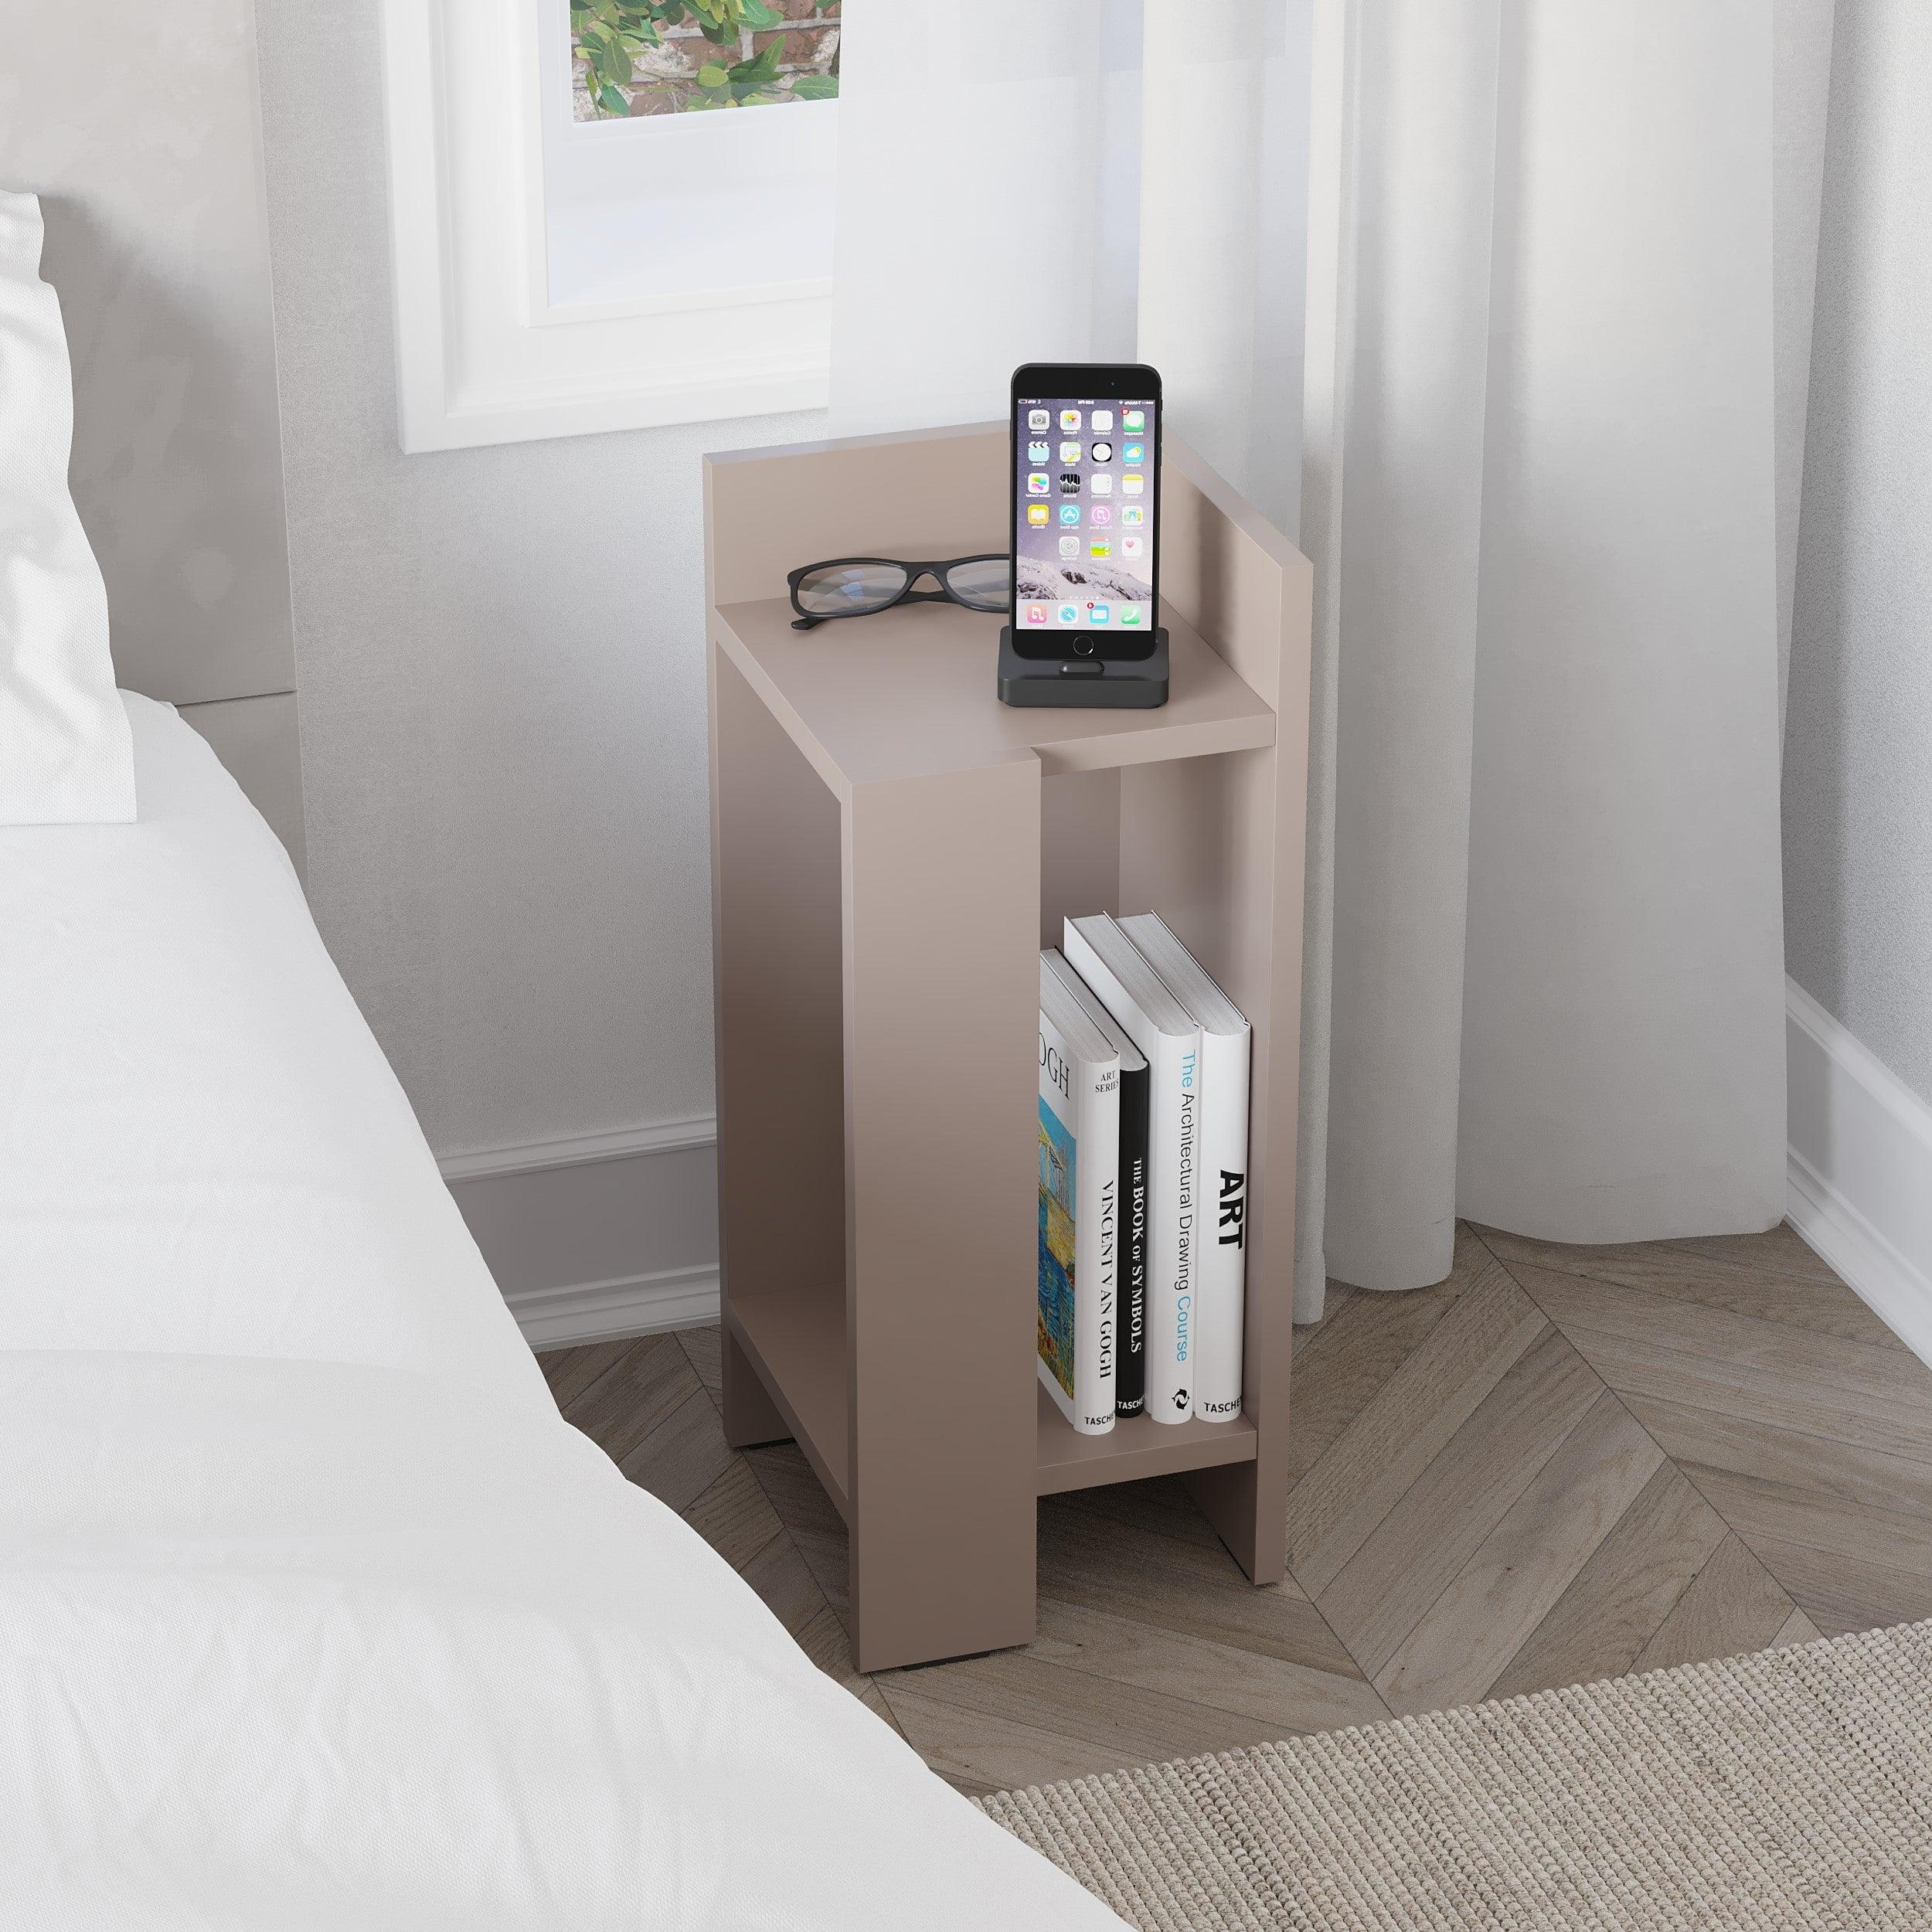 Elos Modern Bedside Table Right Module 25cm Narrow - Decortie